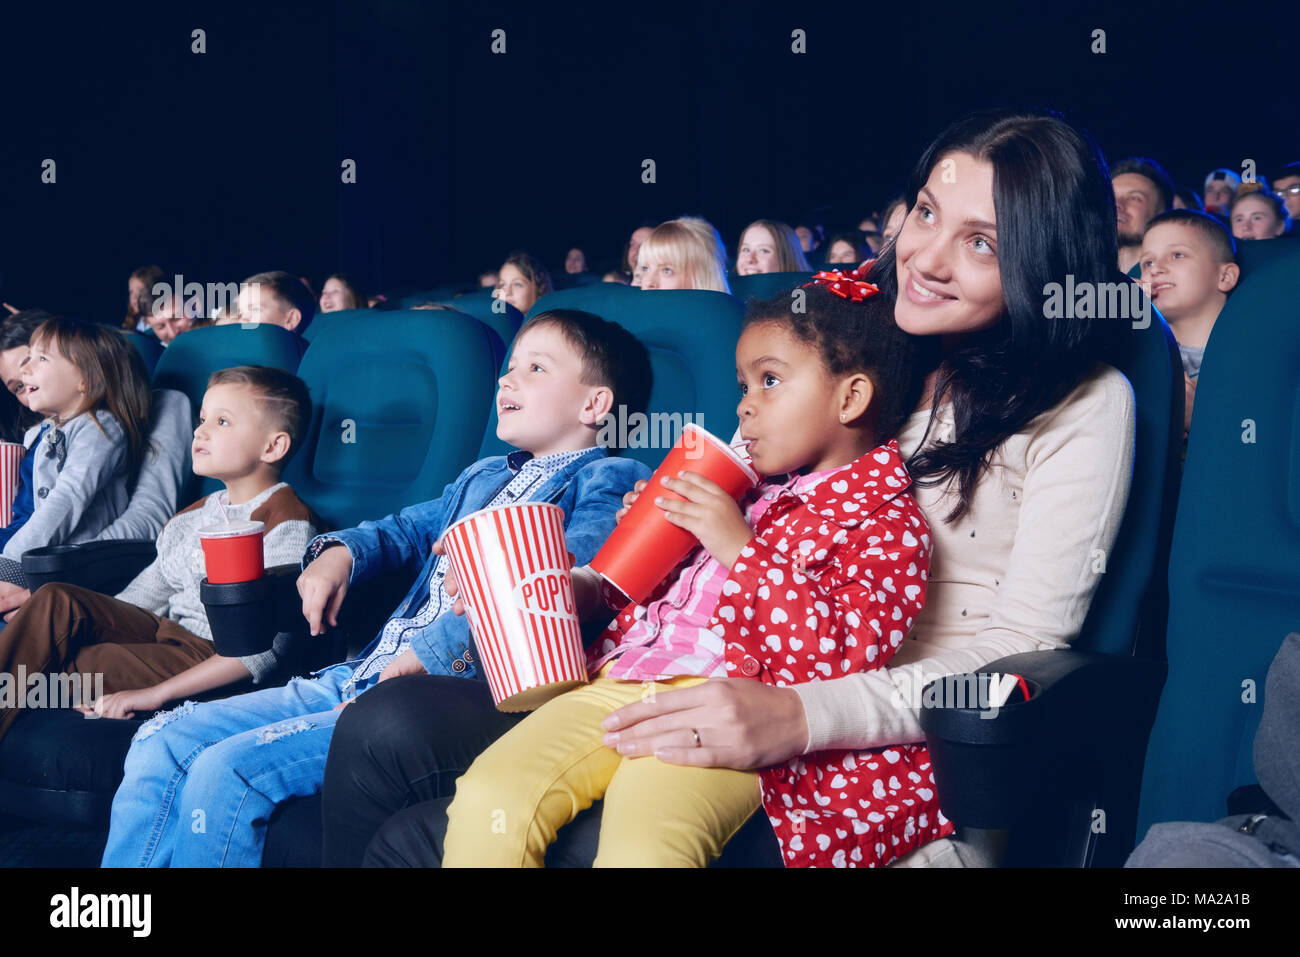 Weda de belle mère et fille regardant bon film en salle de cinéma sur fond d'autres personnes. Petite fille de porter des vêtements colorés, boire du coca et manger du maïs soufflé. Banque D'Images